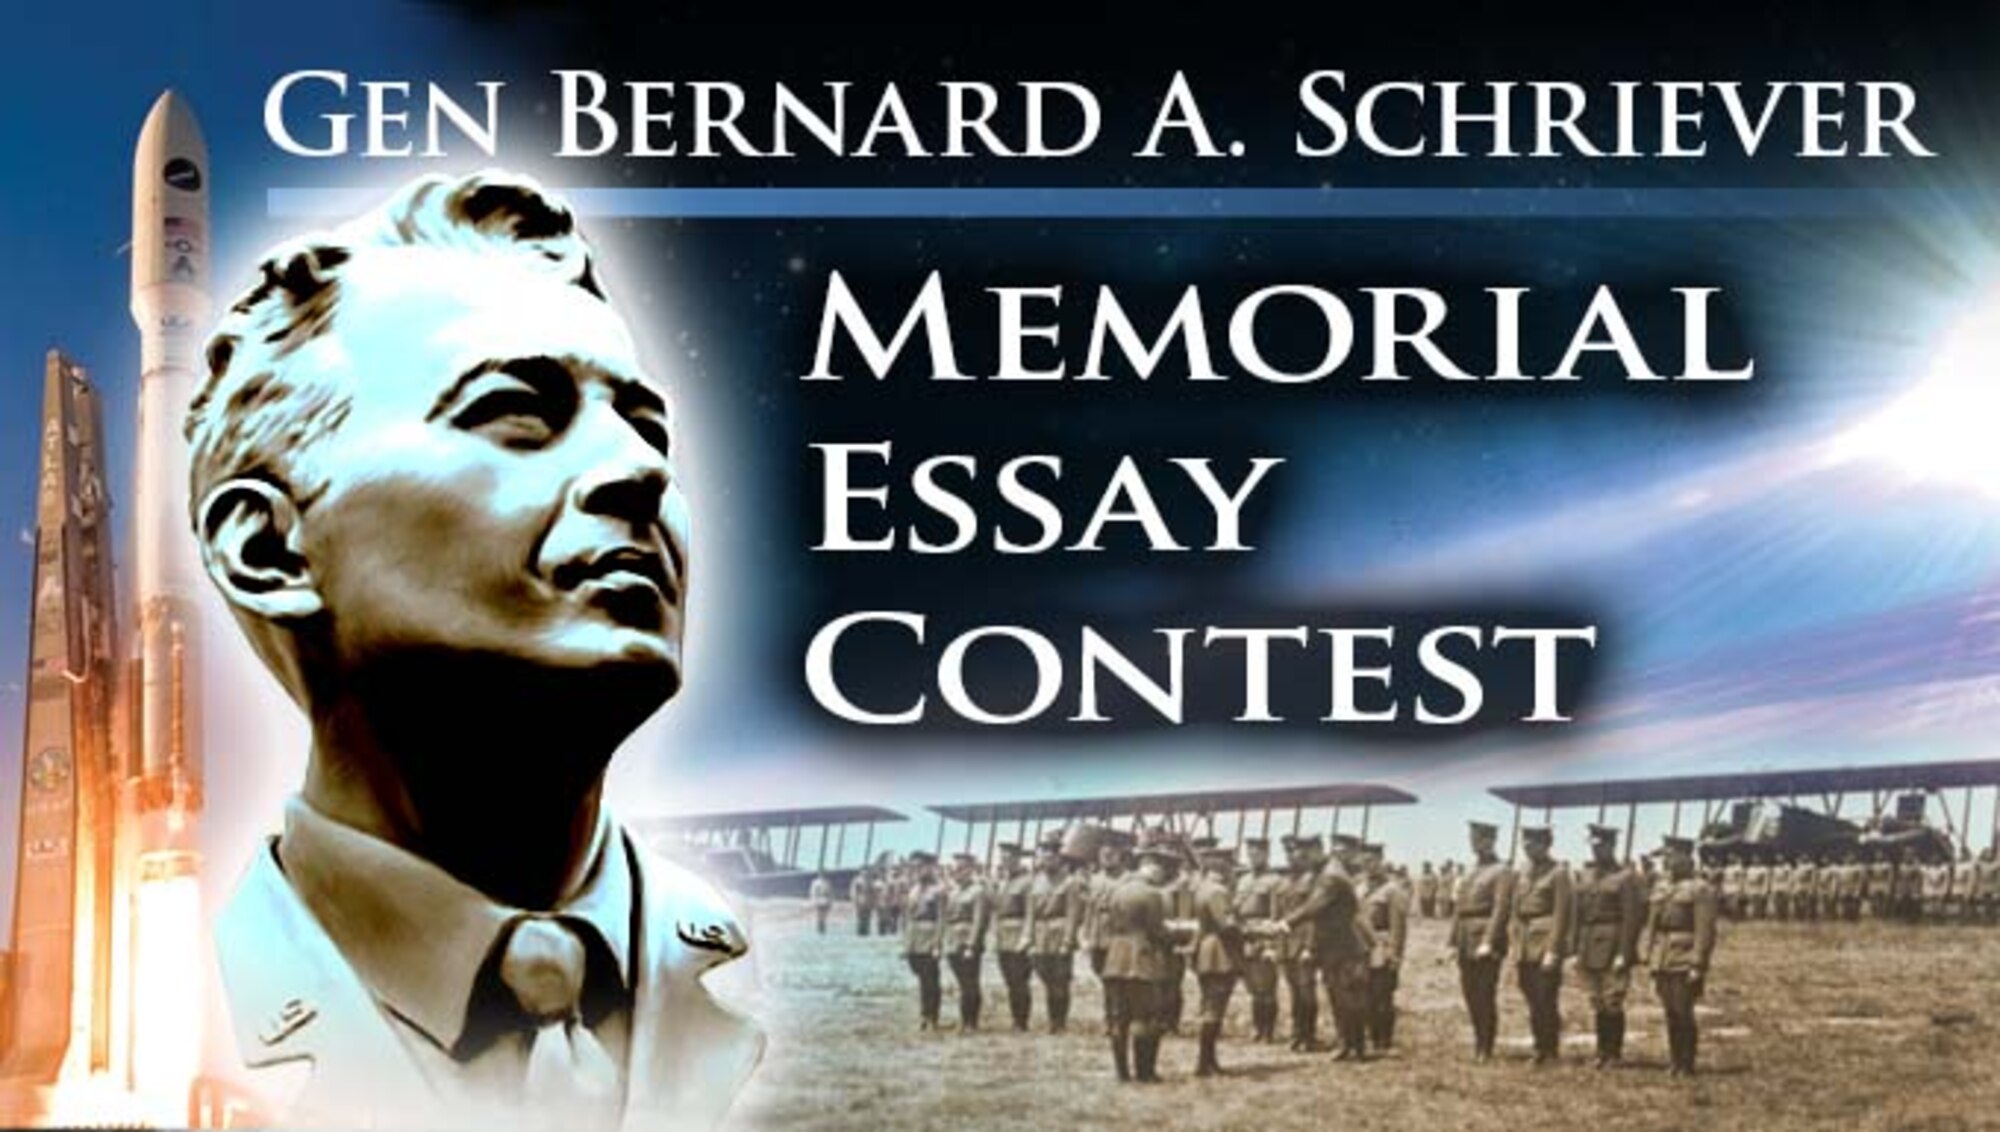 Gen Bernard A. Schriever Memorial Essay